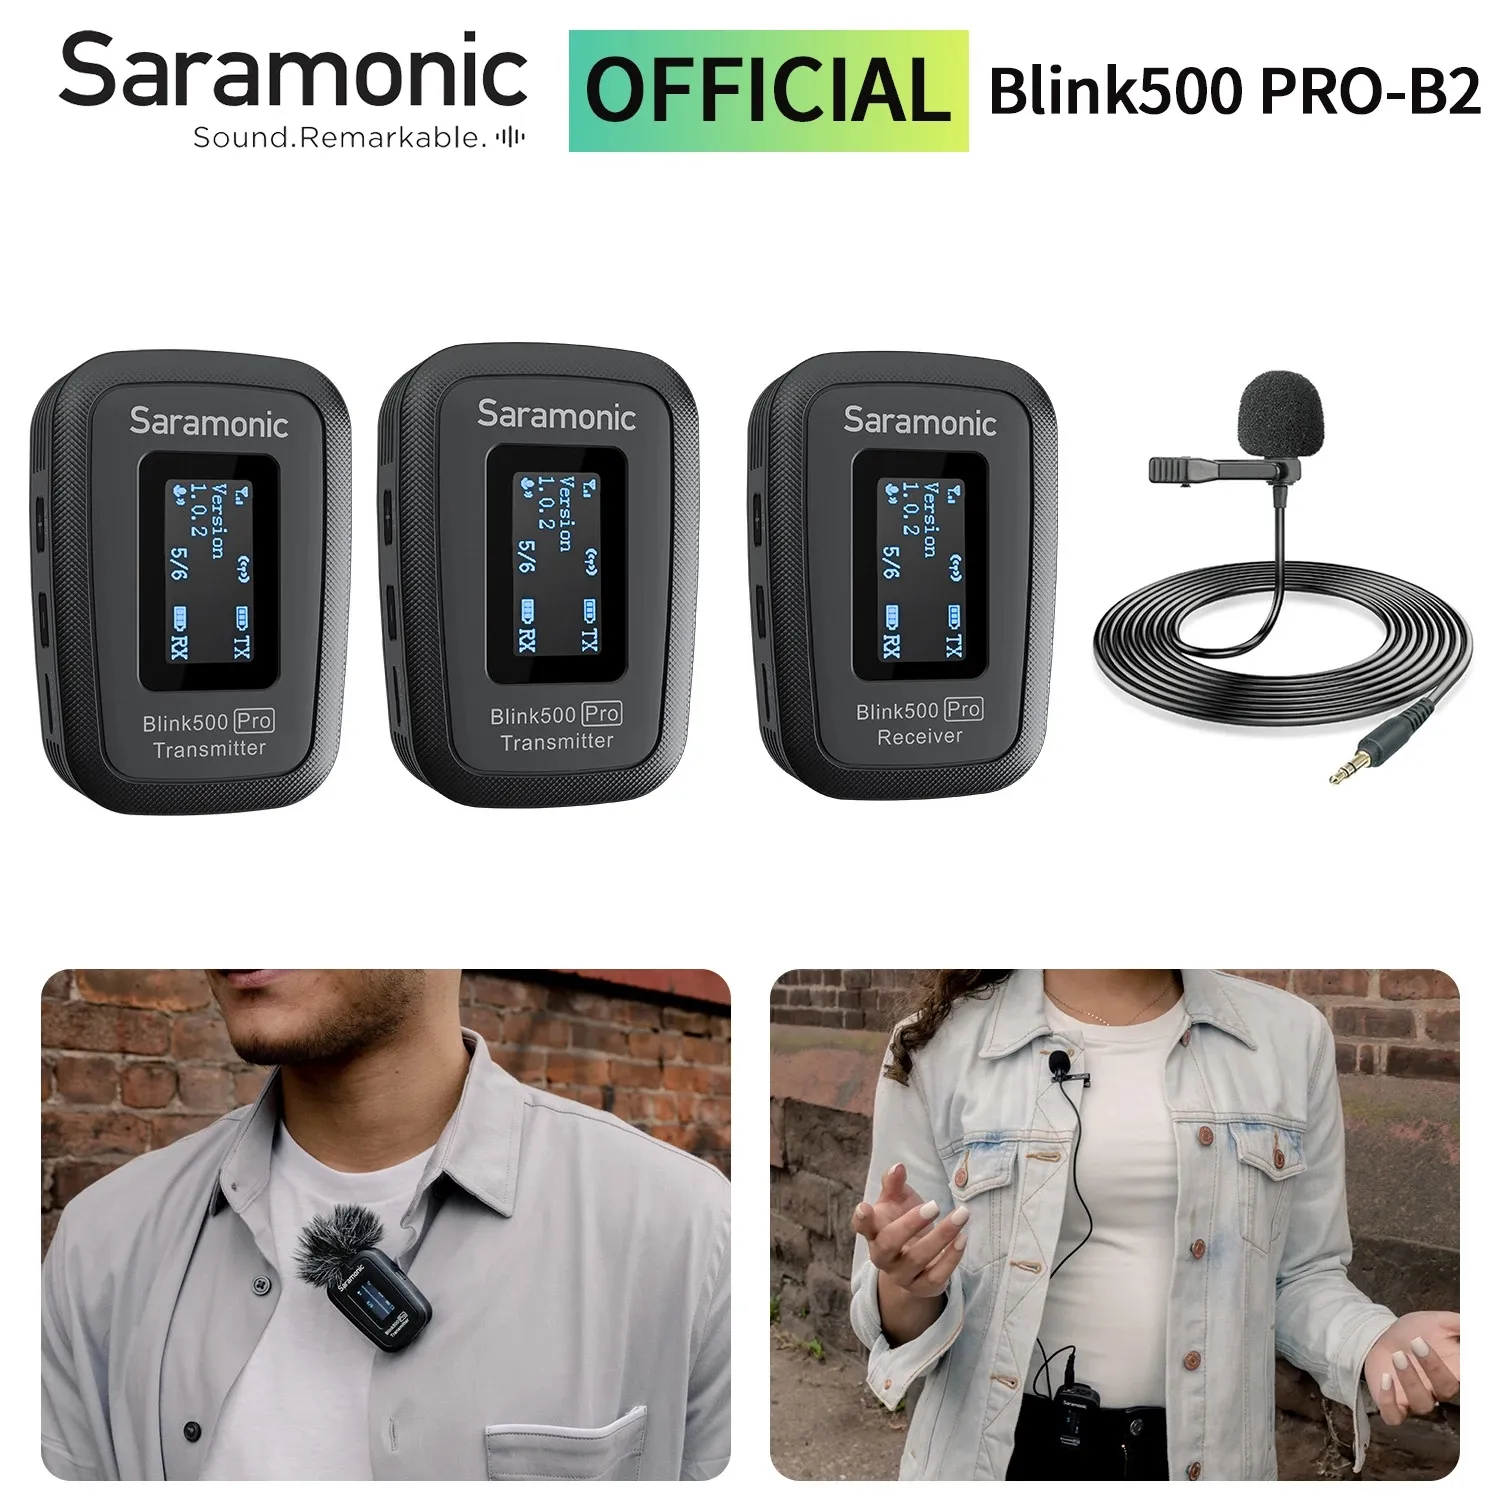 Профессиональный петличный конденсаторный беспроводной микрофон Saramonic Blink500 Pro для ПК, мобильного телефона, потоковый микрофон Youtube